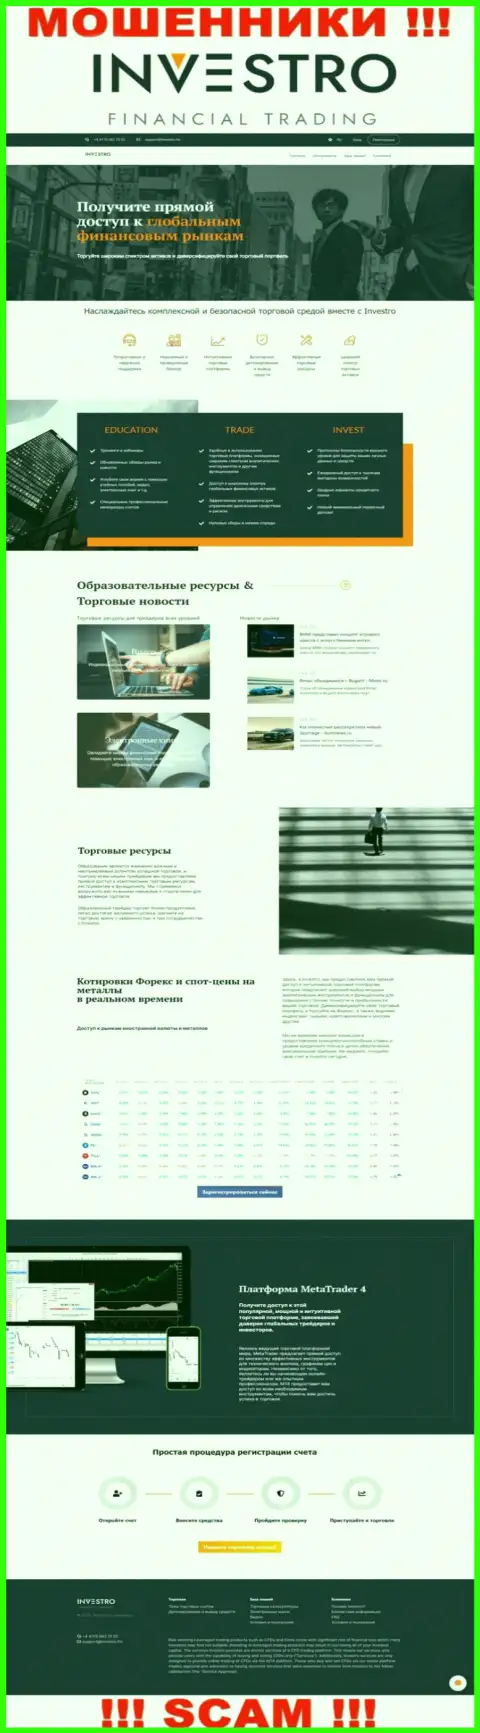 Скрин официального ресурса Инвестро - Investro Fm